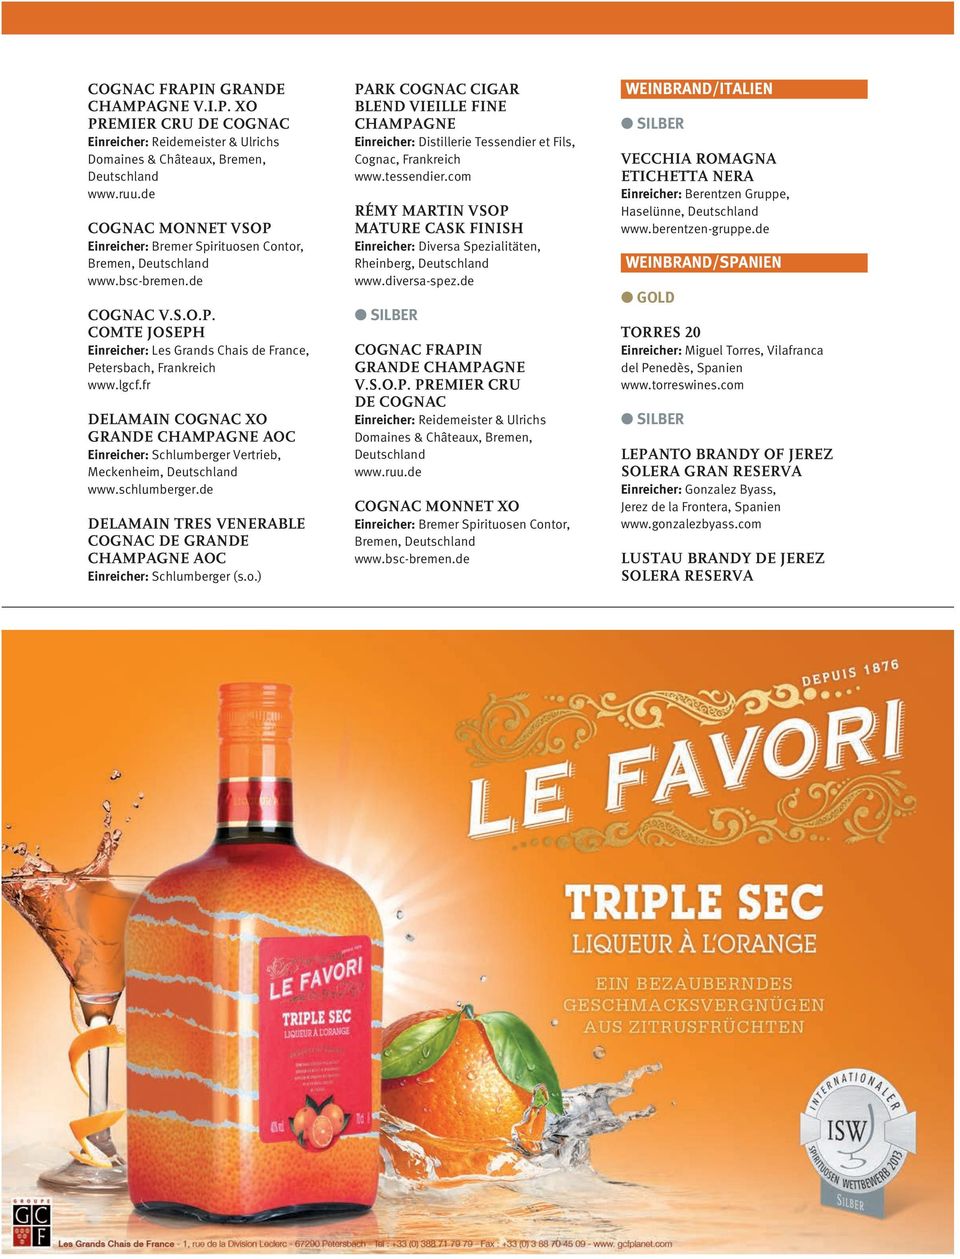 ) PARK COGNAC CIGAR BLEND VIEILLE FINE CHAMPAGNE Einreicher: Distillerie Tessendier et Fils, Cognac, Frankreich www.tessendier.